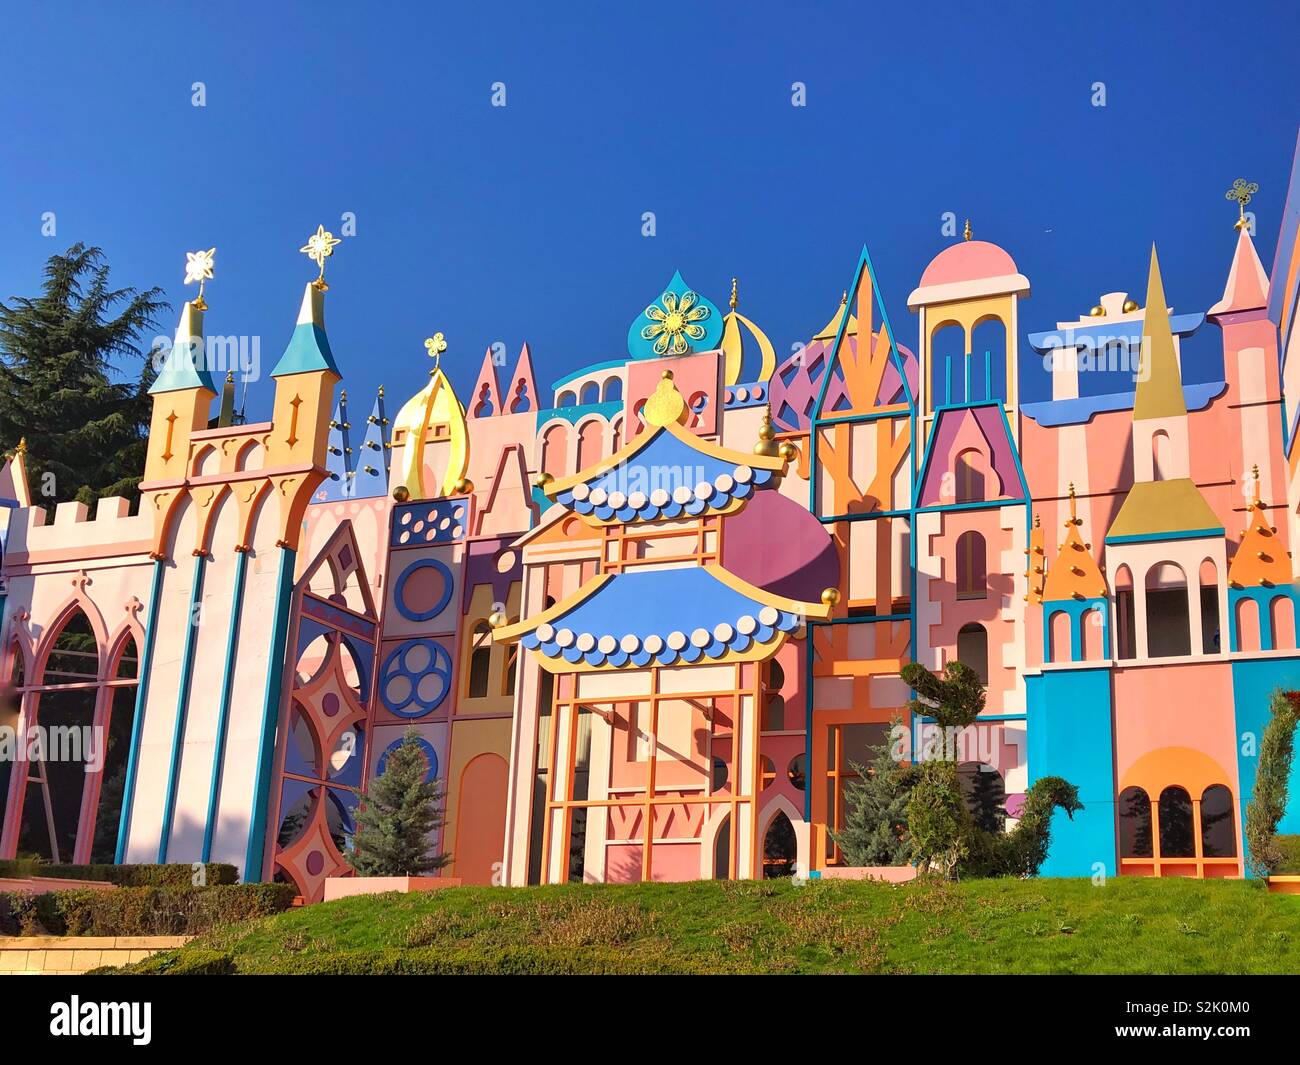 Façade de l 'It's a small world' ride at Disneyland Paris Banque D'Images